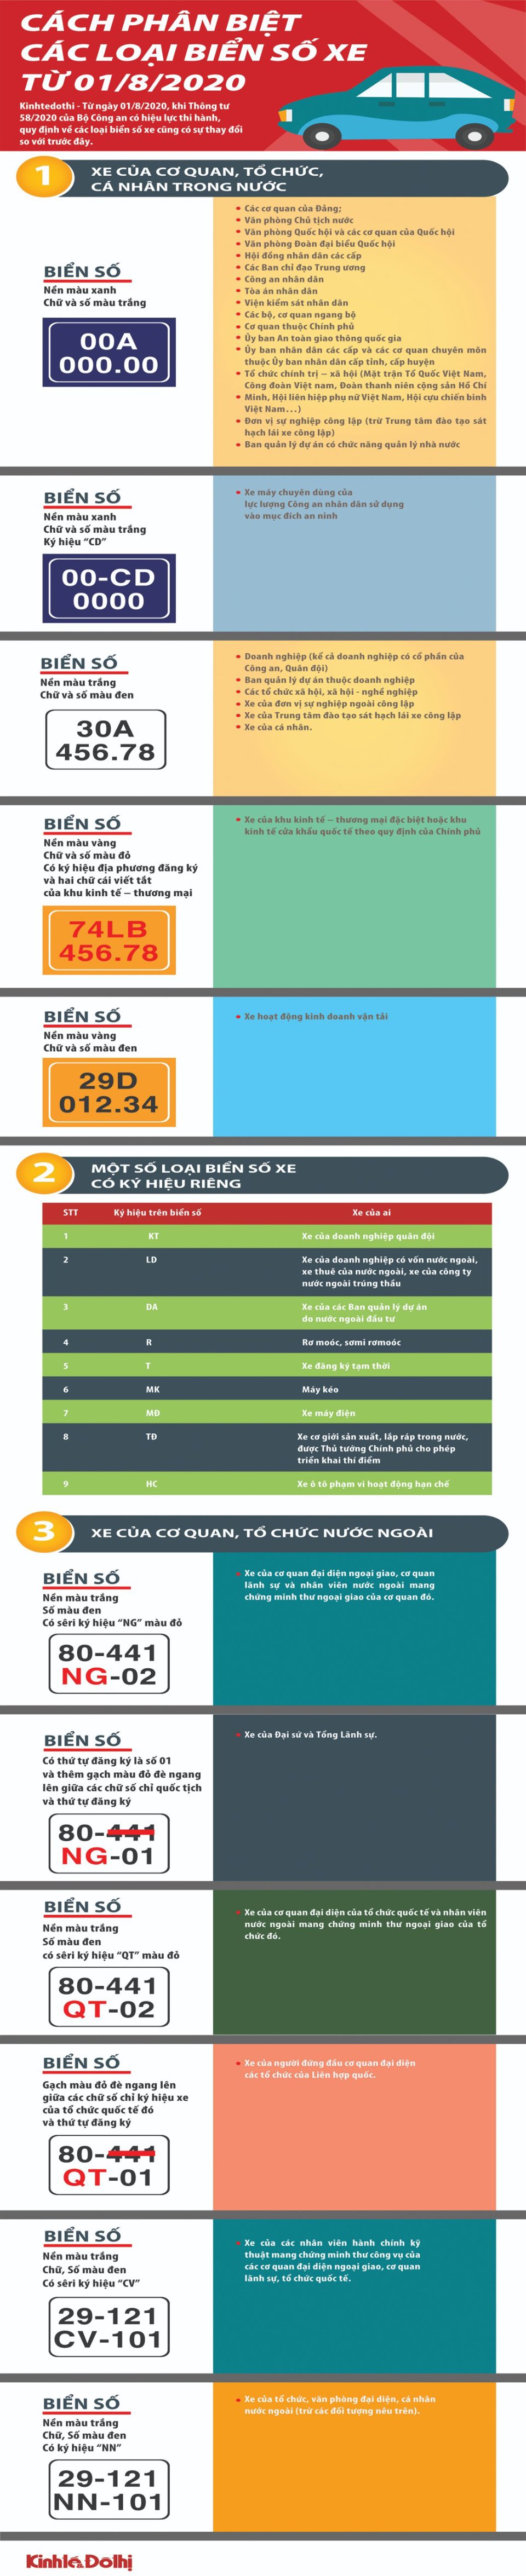 [Infographic] Cách phân biệt các loại biển số xe từ 1/8/2020 - Ảnh 1